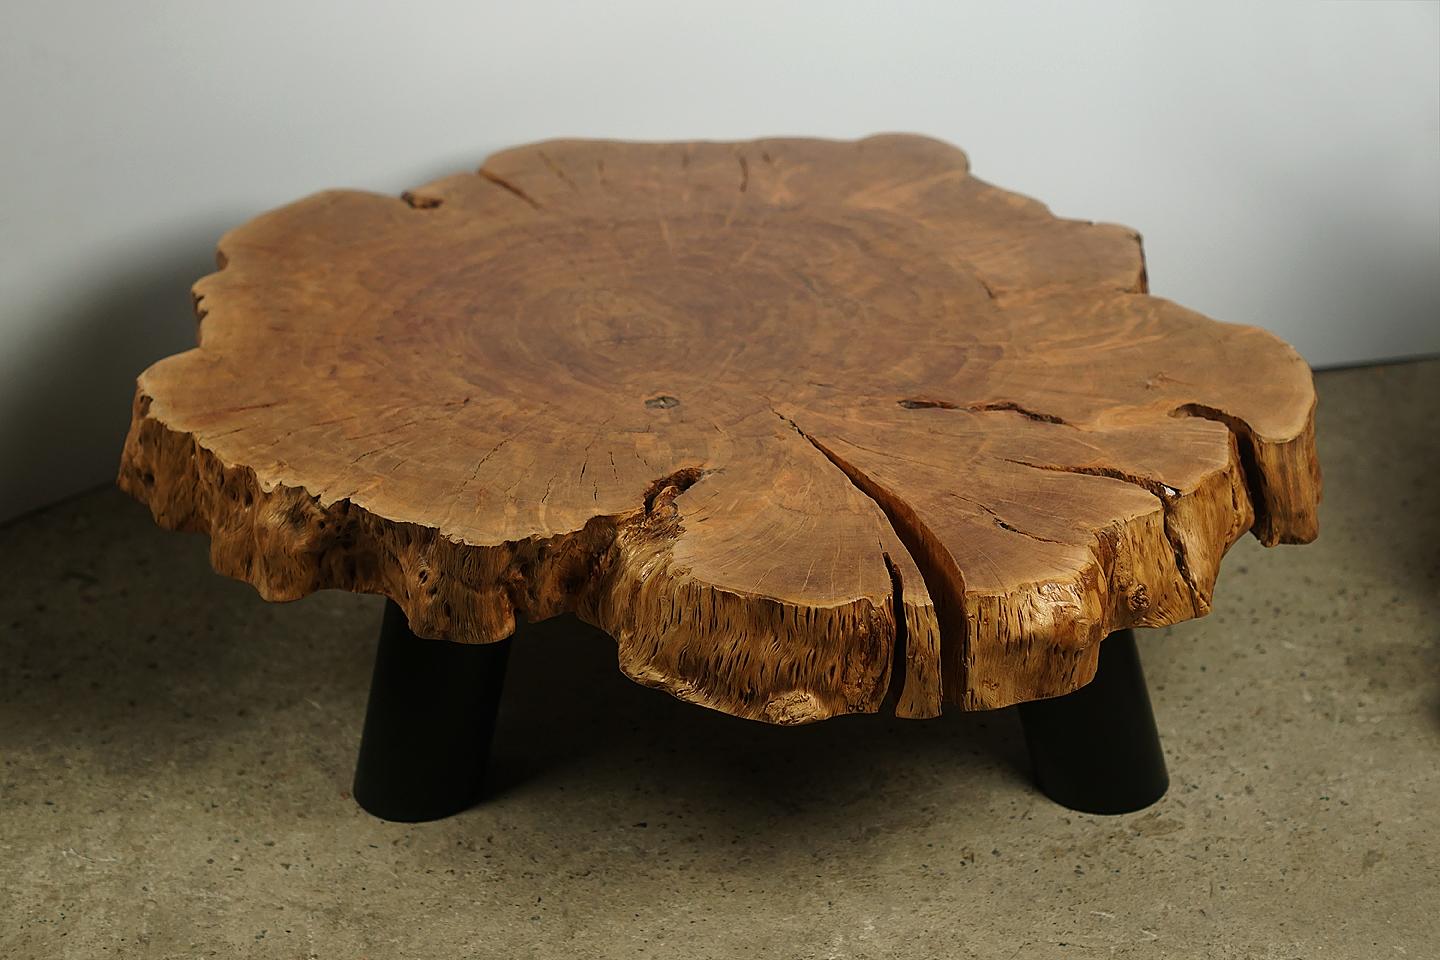 Table basse, Production maison (Designer Cocomaster)

Magnifique table basse en bois de litchi organique avec de superbes détails d'érosion et des pieds en fer coloré en noir. 
L'huilage de la racine lui confère une finition particulière et